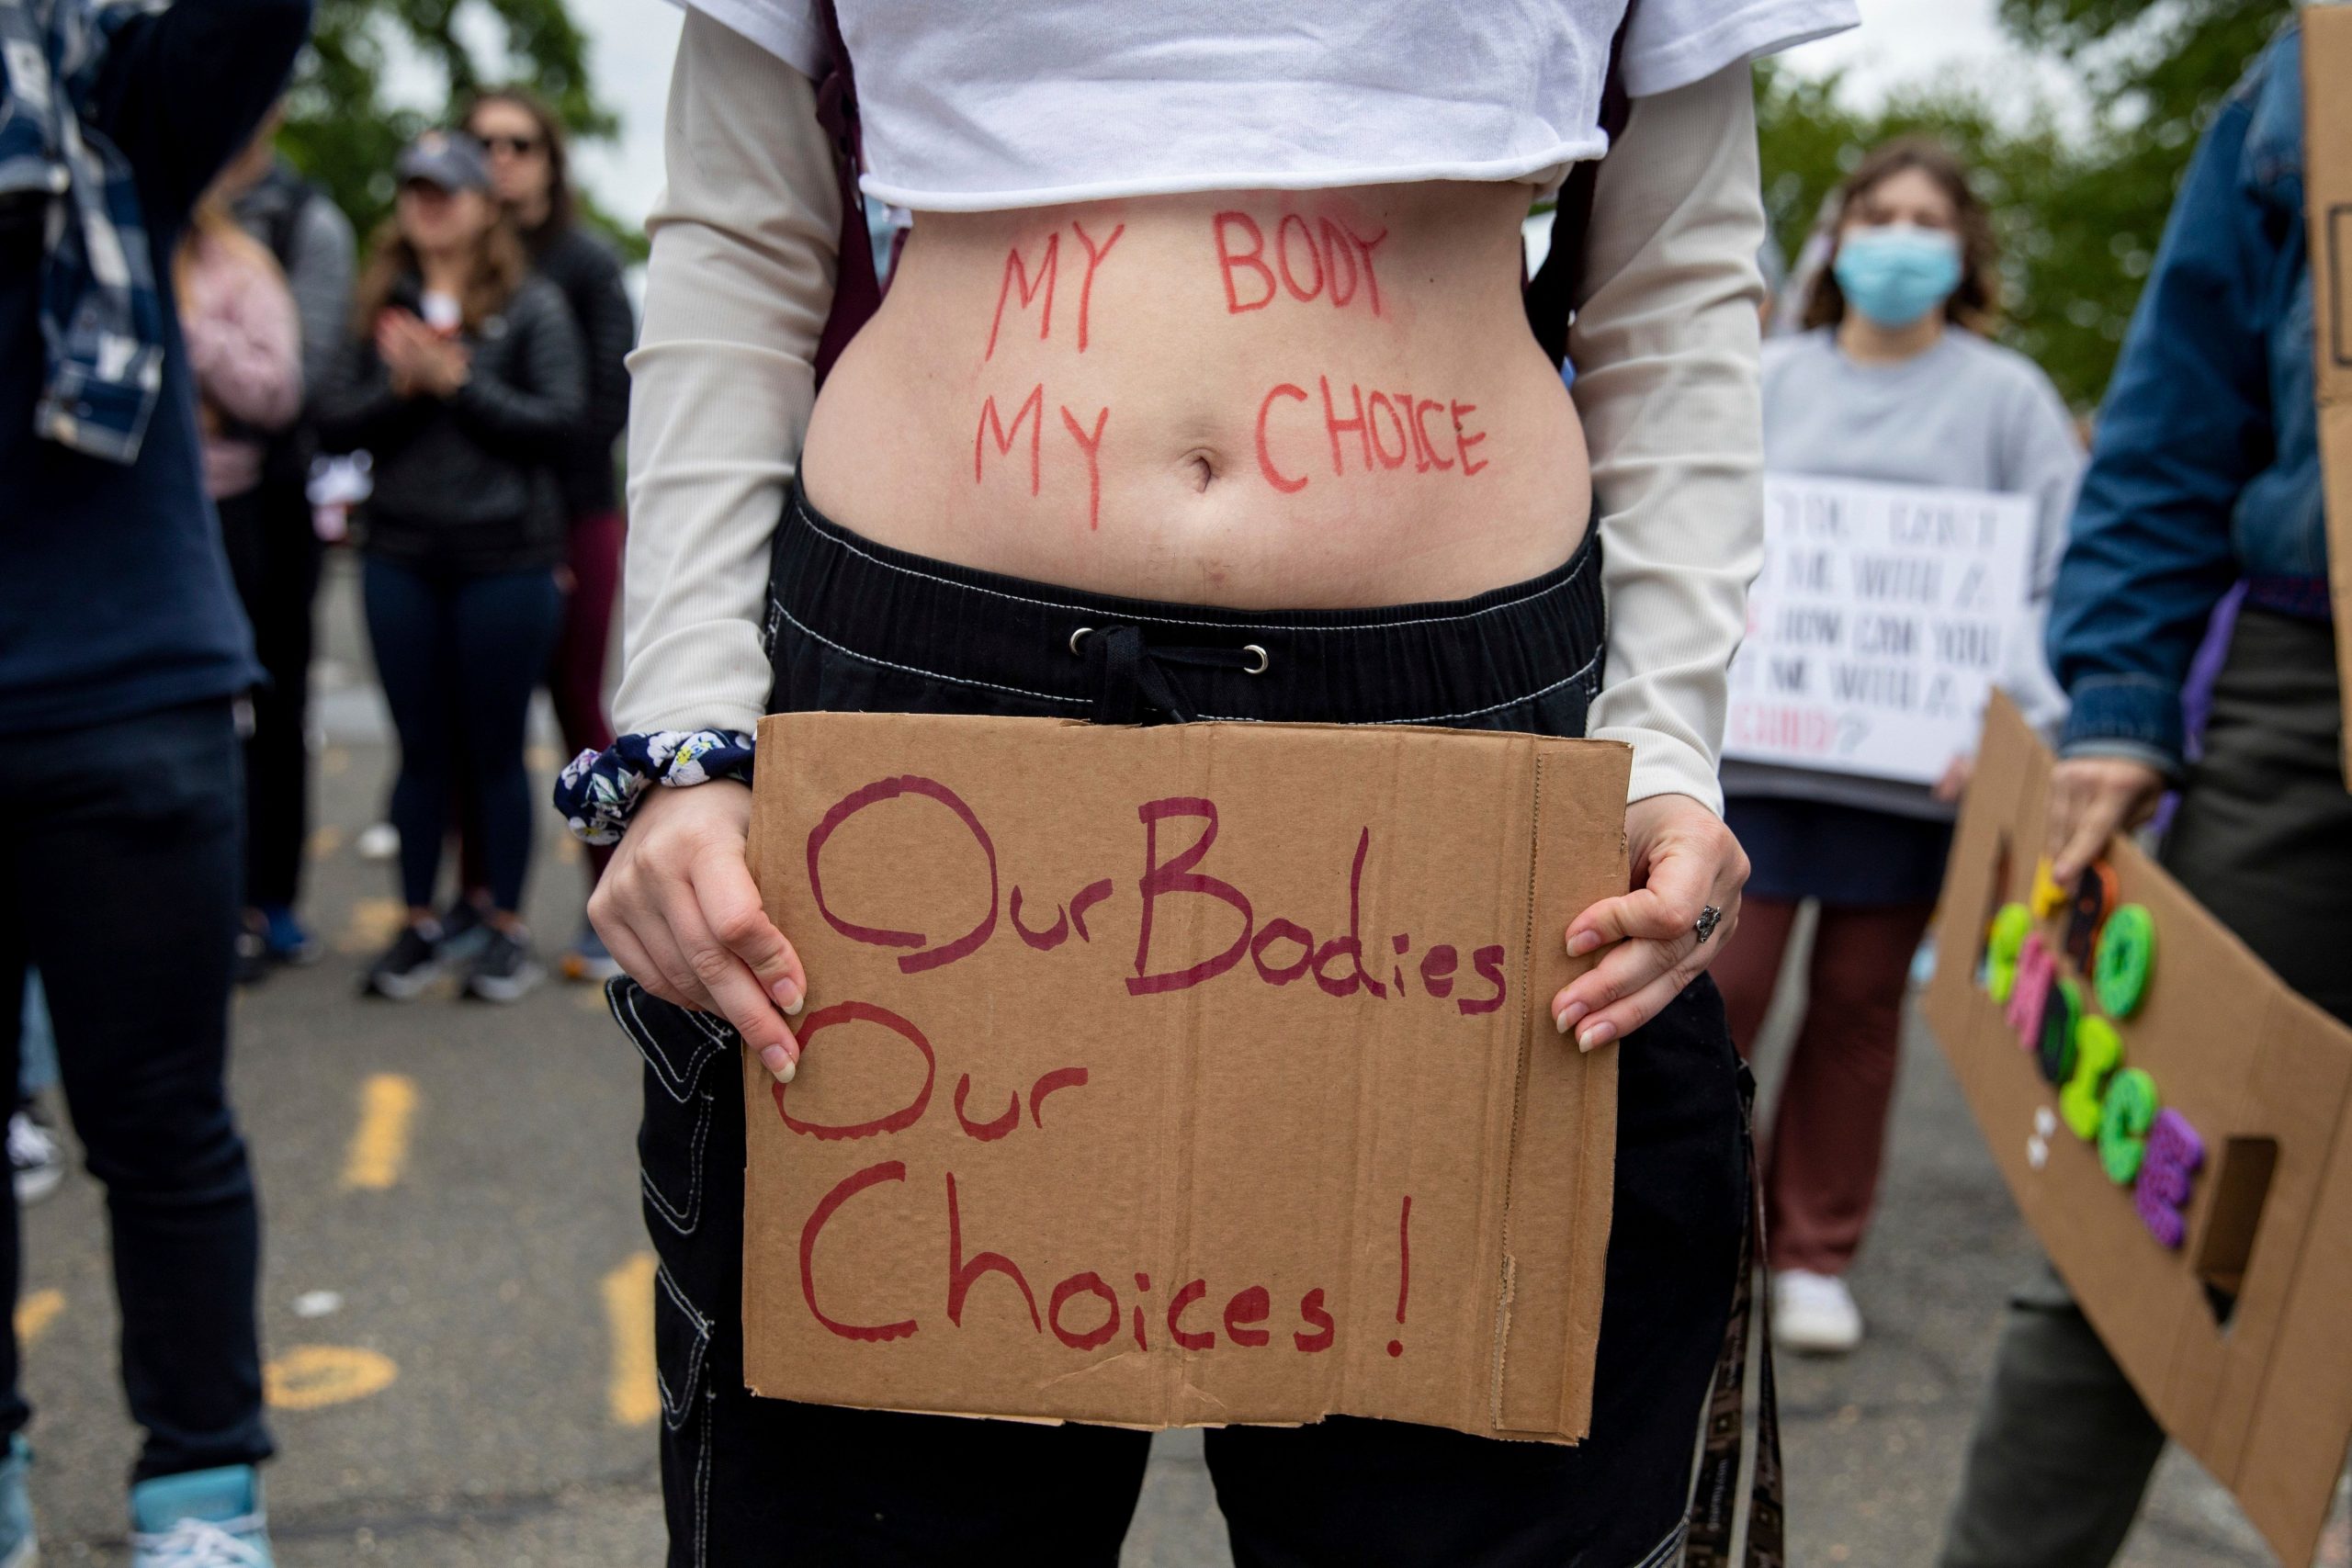 Roe v Wade: Anti-abortion Catholics clash over judgement overturn